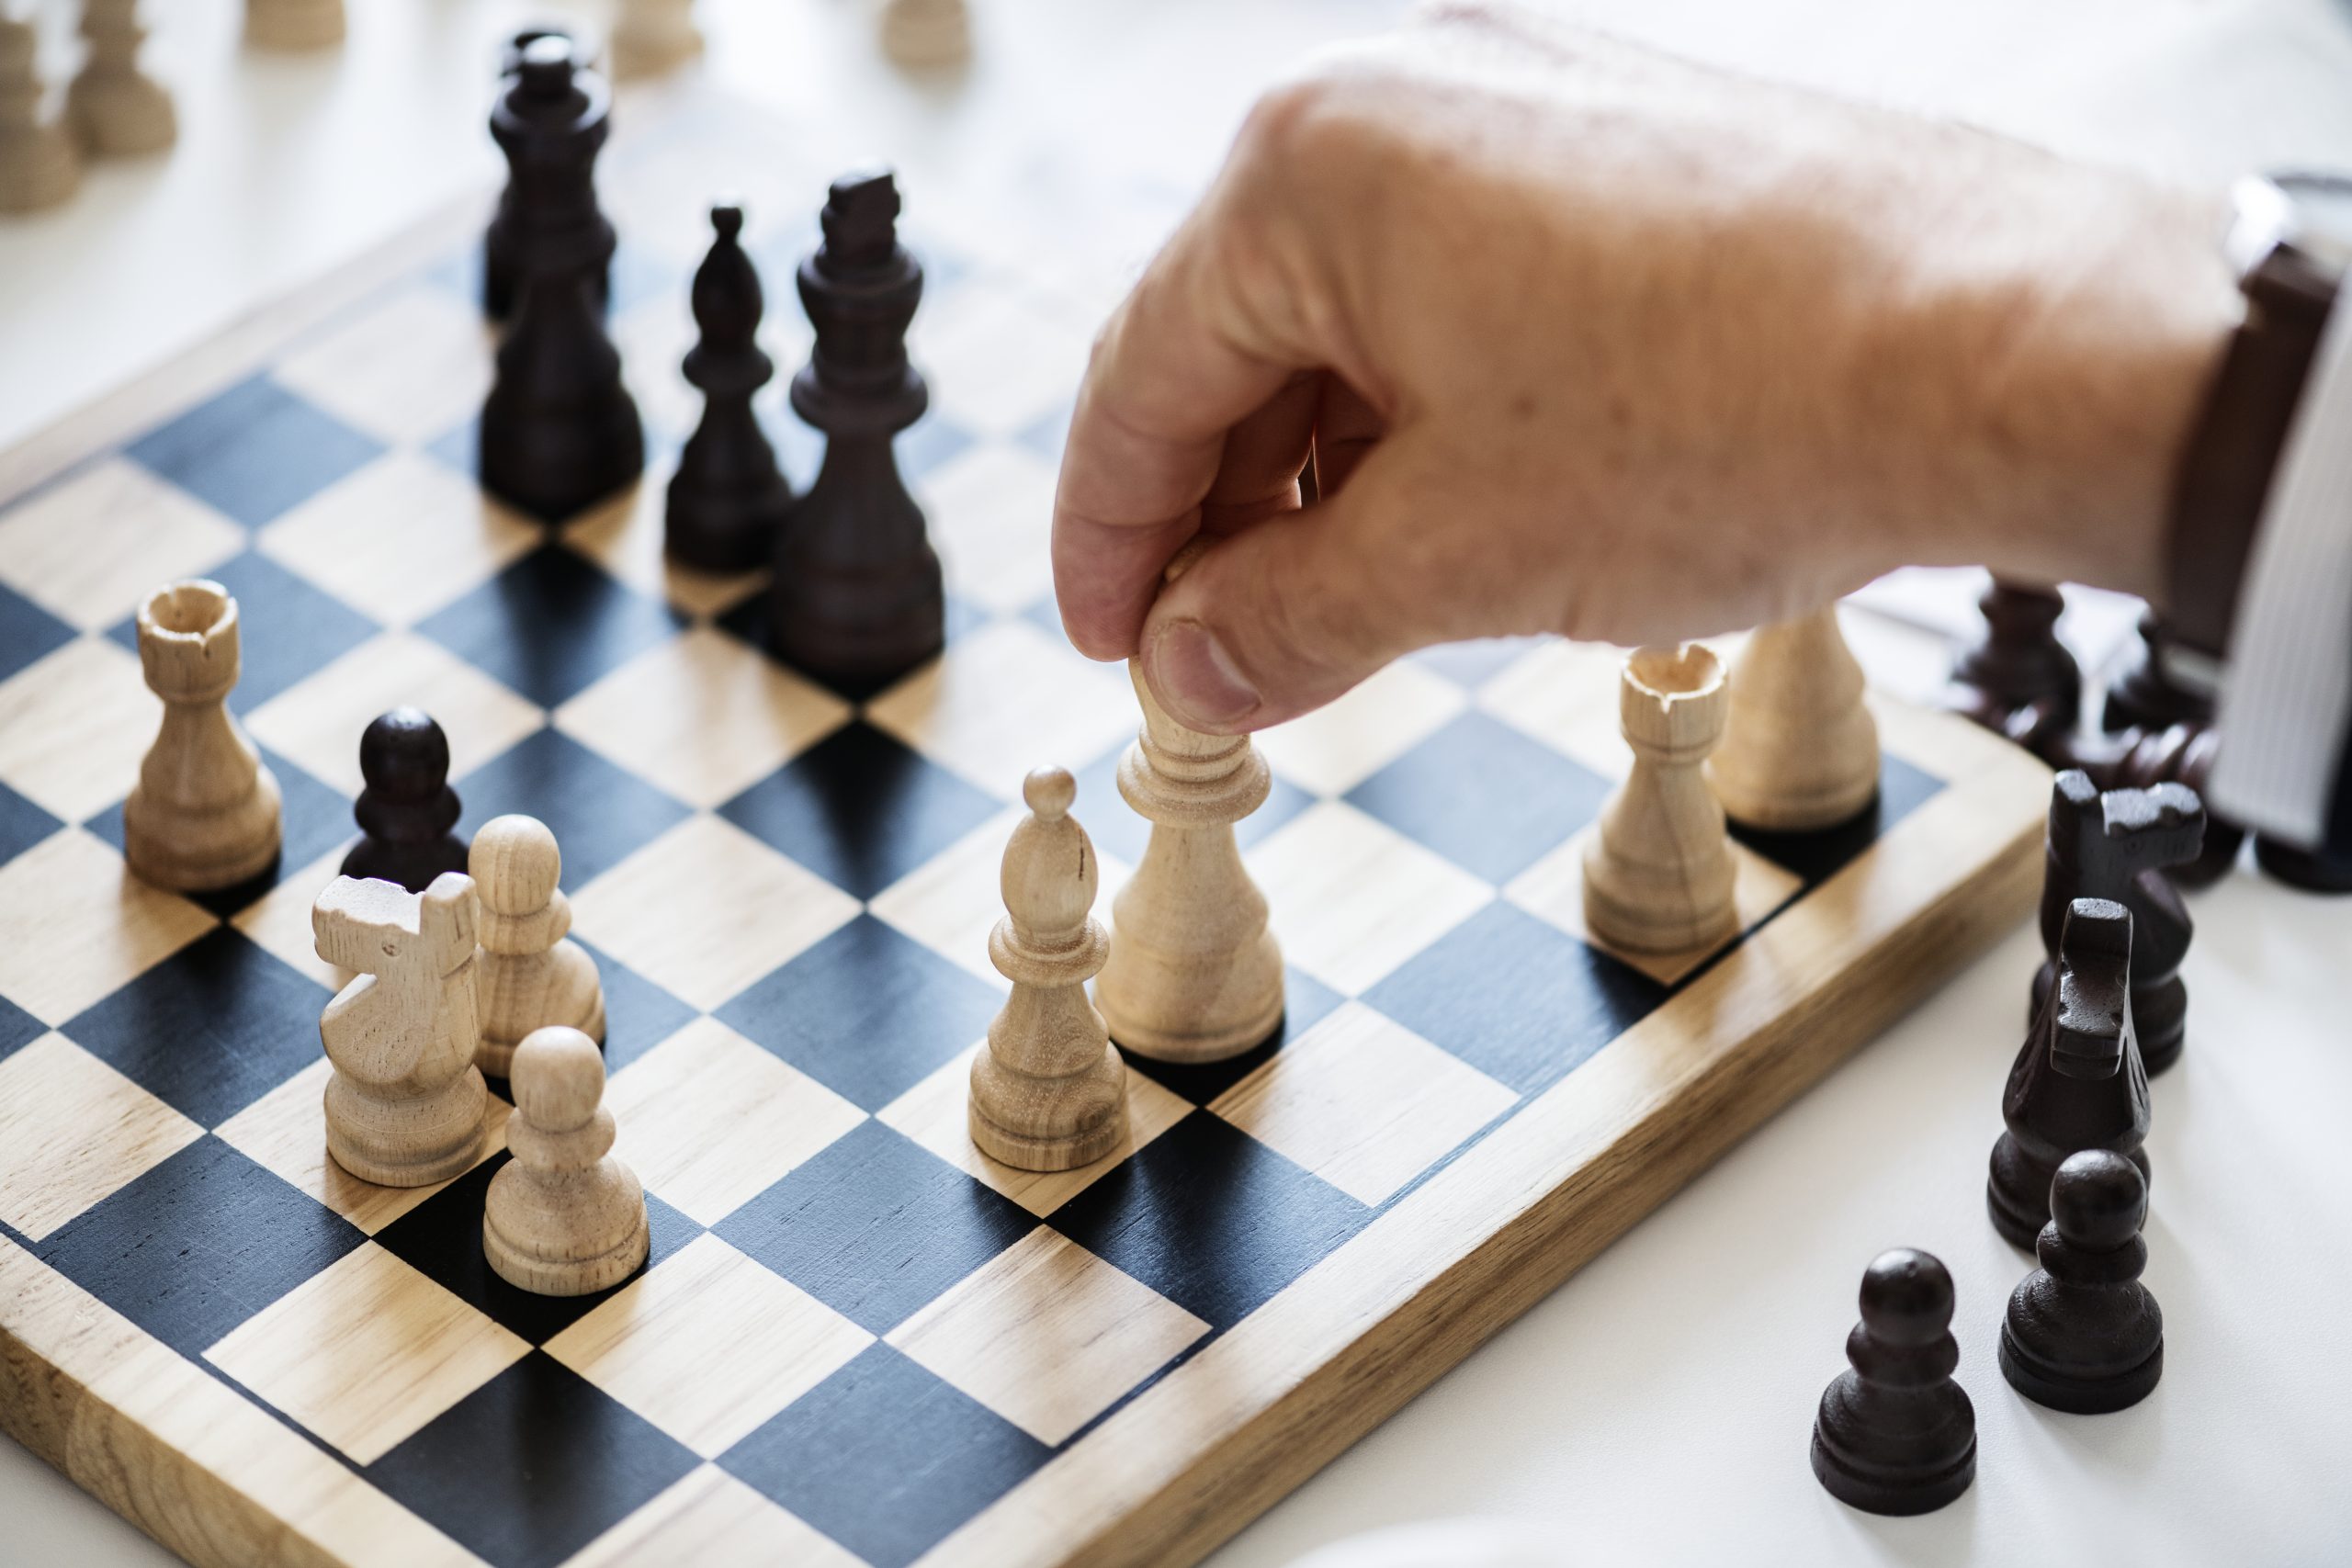 Demência: risco cai com hábitos como jogar xadrez